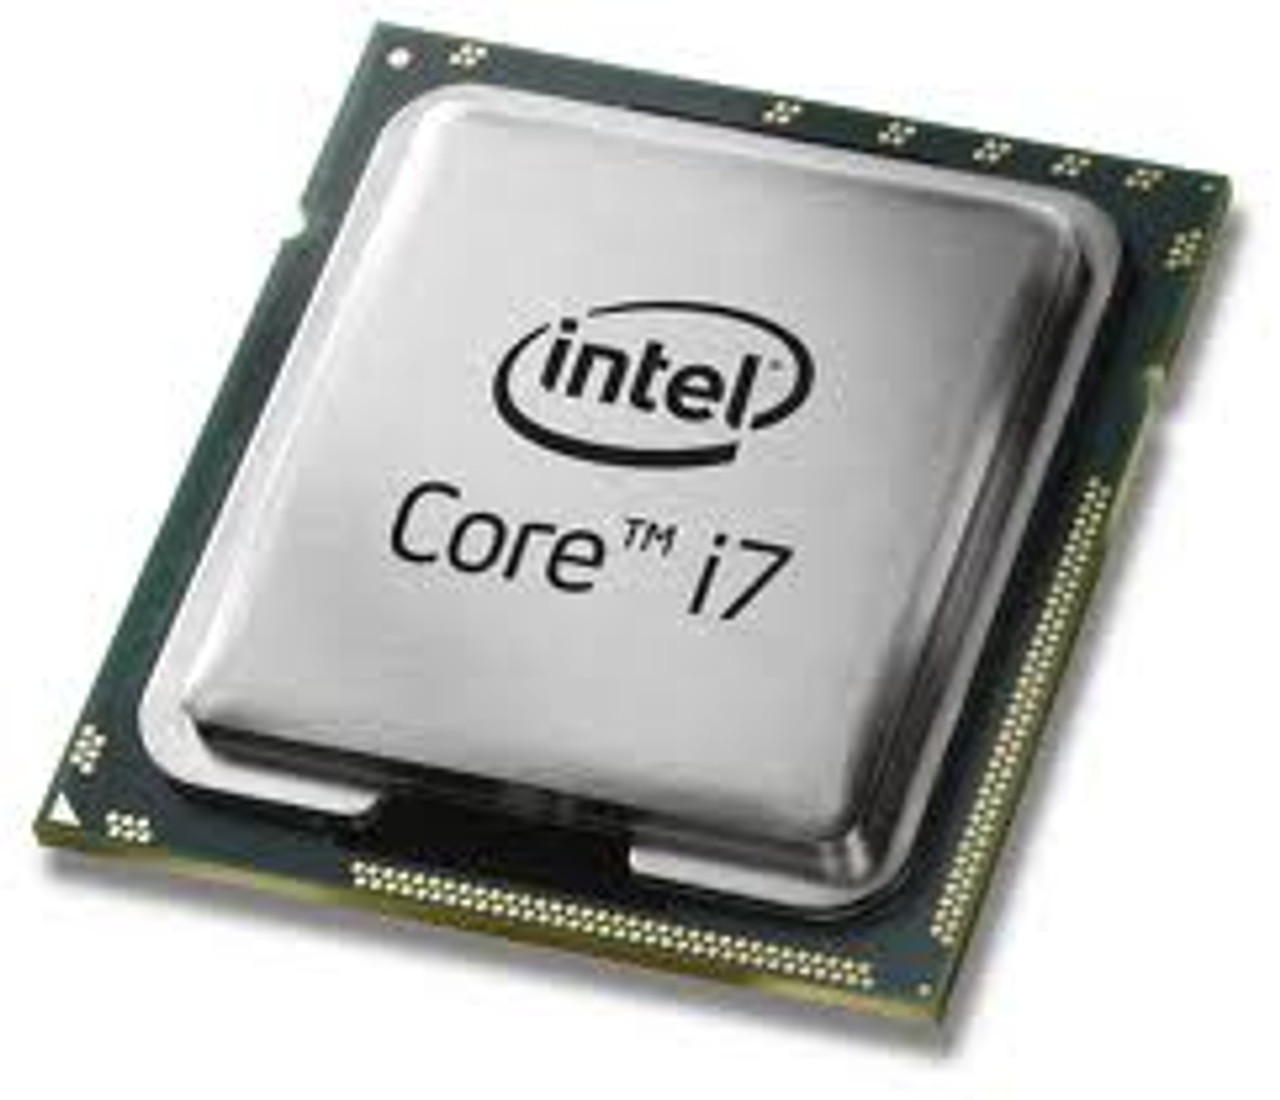 PCパーツIntel Core i7-6700　SR2L2　CPU